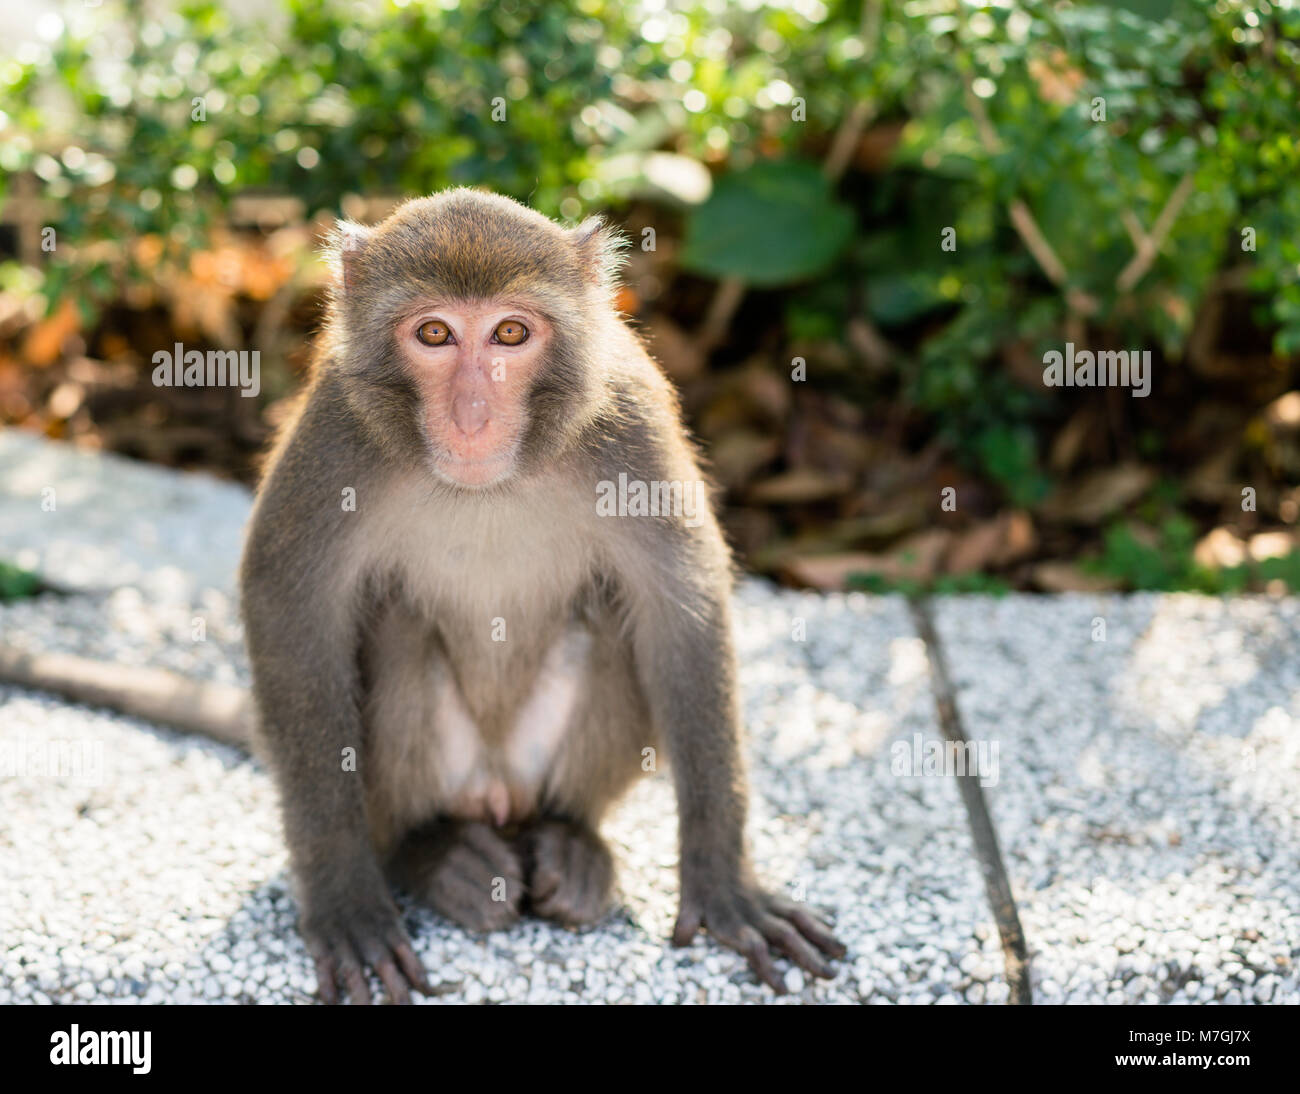 Wild taiwanesischen Formosan rock macaque Affen in die Kamera schaut Stockfoto